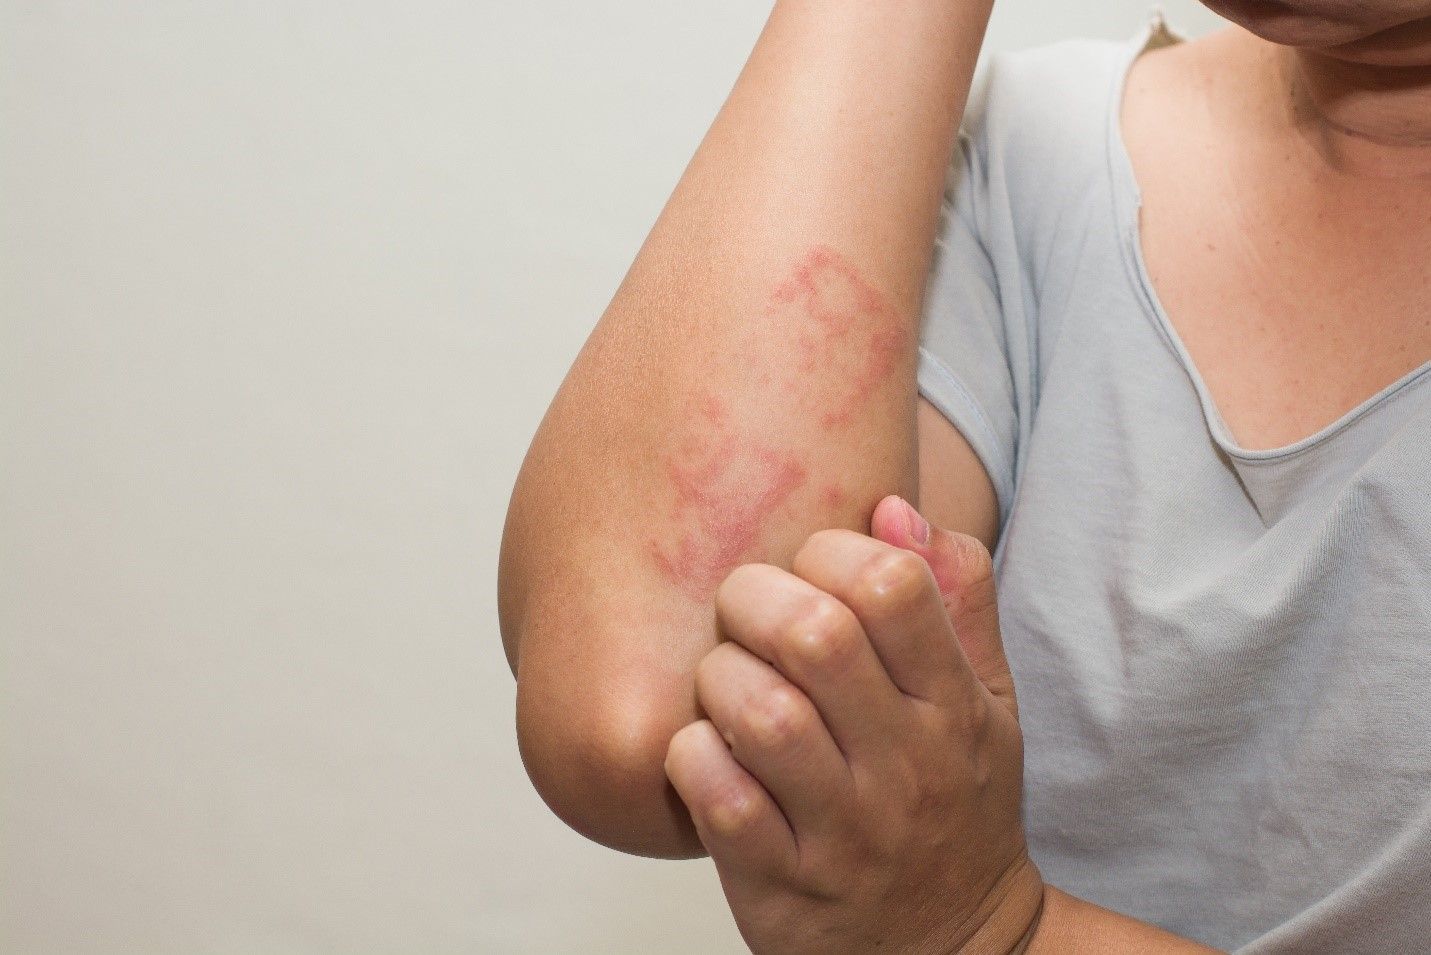 Sintomas de alergia - como reconhecer as principais reações alérgicas